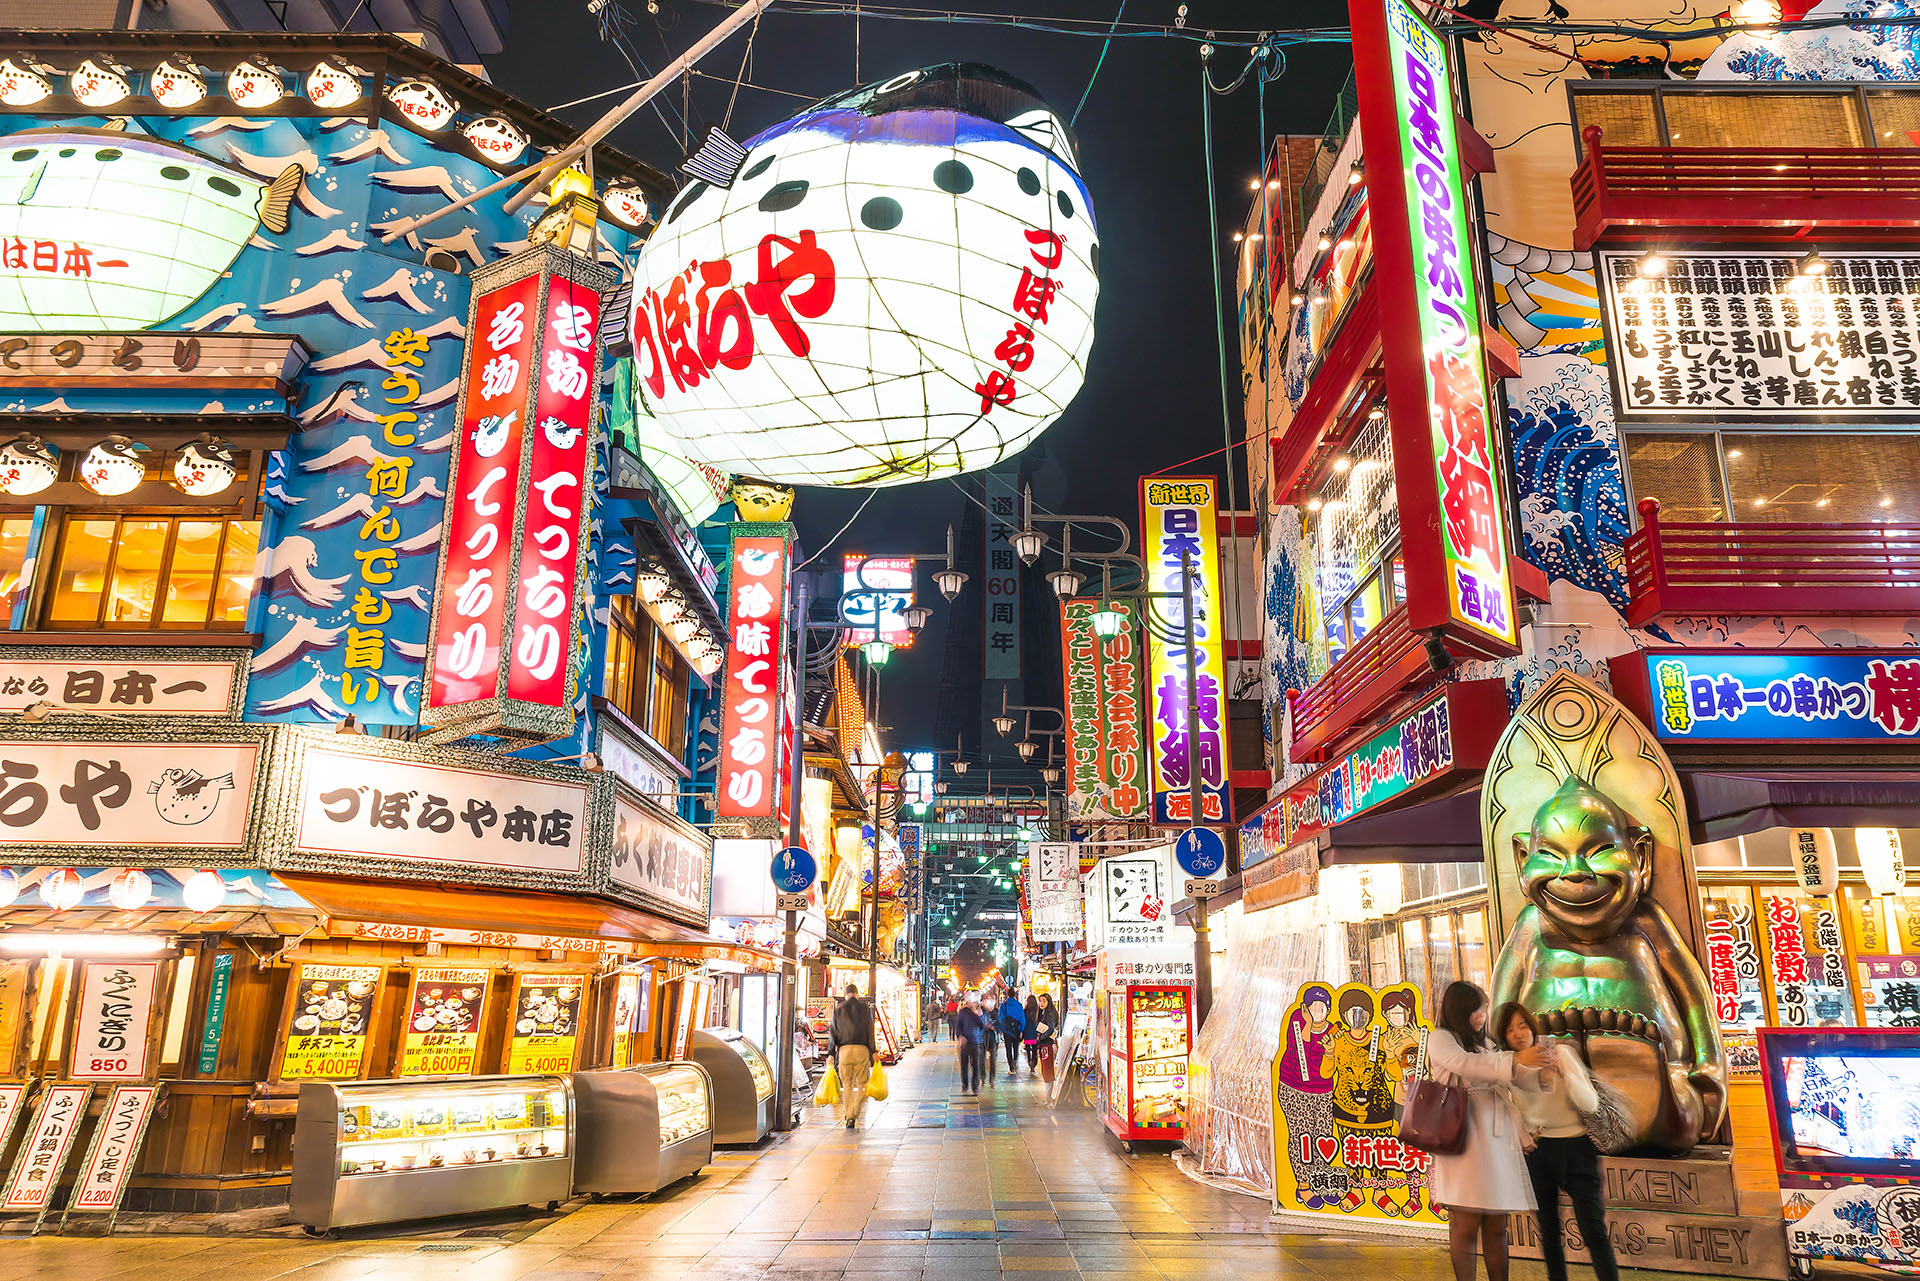 Osaka comparte la quinta posición con Tel Aviv (Israel), con un WCOL de 101 y desciende cuatro posiciones con respecto al índice anterior, que la colocó en primer lugar junto a Singapur y Hong Kong. Osaka ha visto tendencias similares a Singapur, con precios al consumidor estancados y el gobierno japonés ha subsidiado costes como el transporte público 